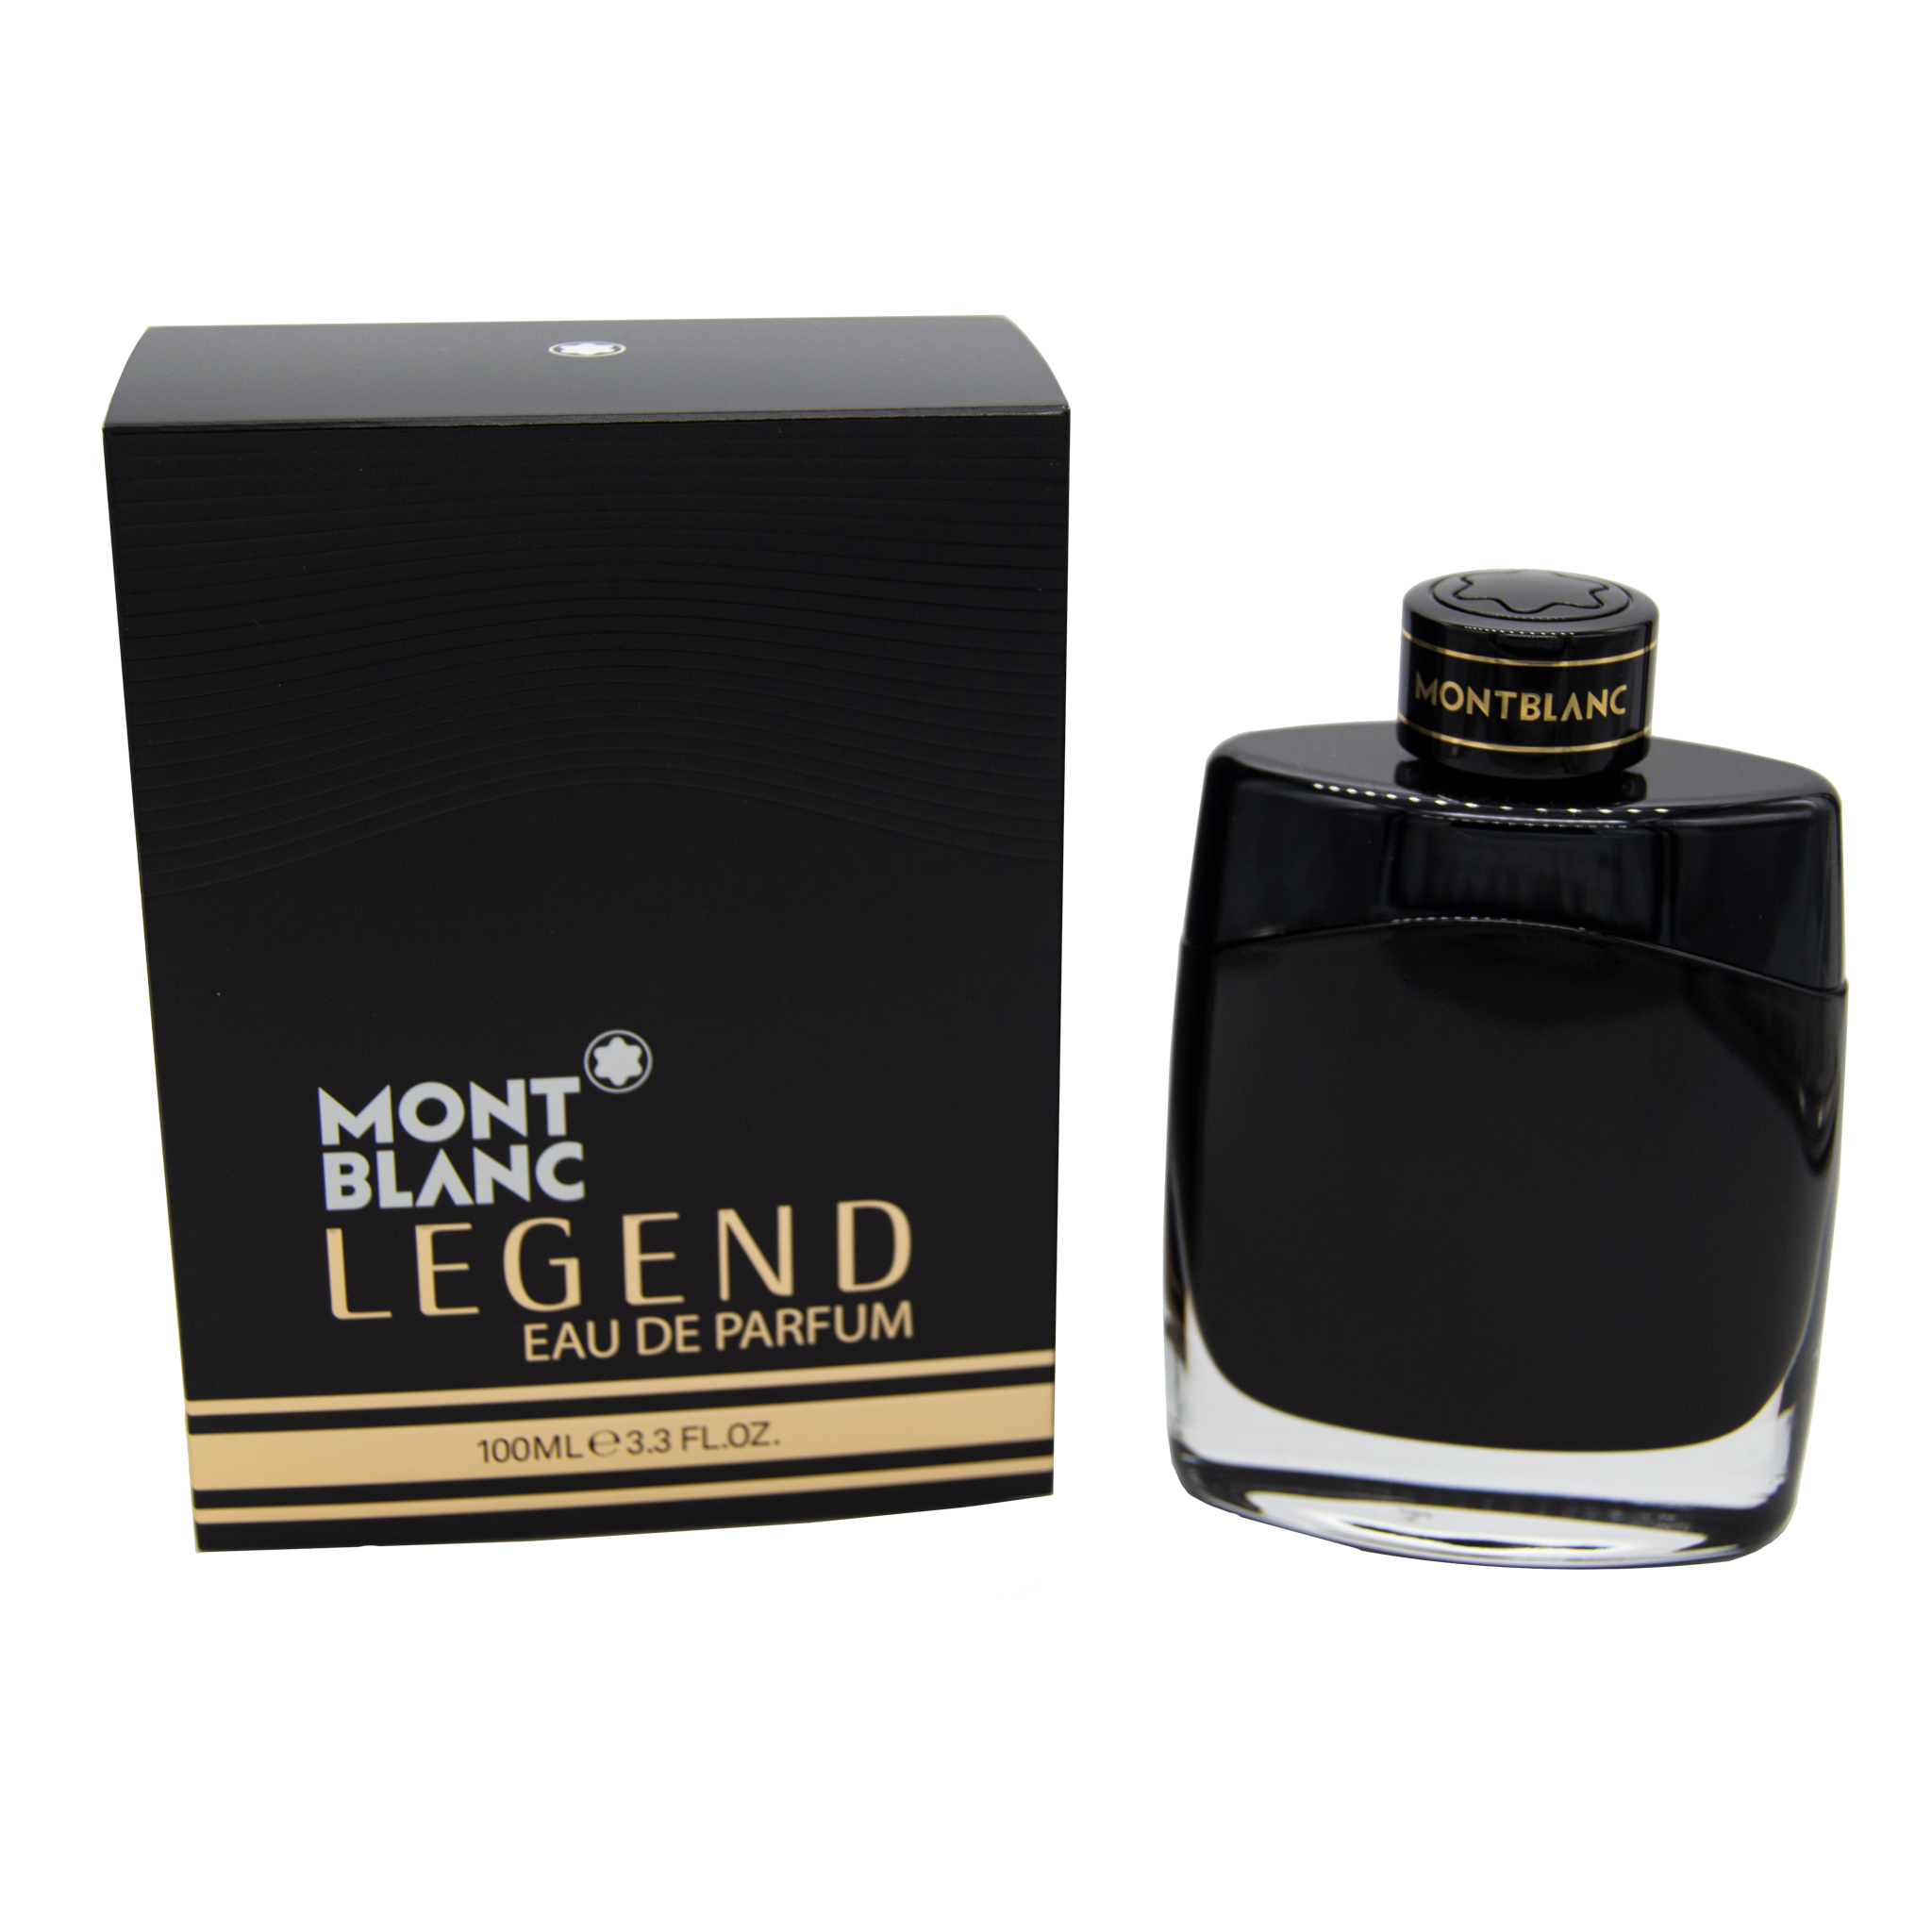 Montblanc Legend Eau de Parfum – Essence Fragrances Online